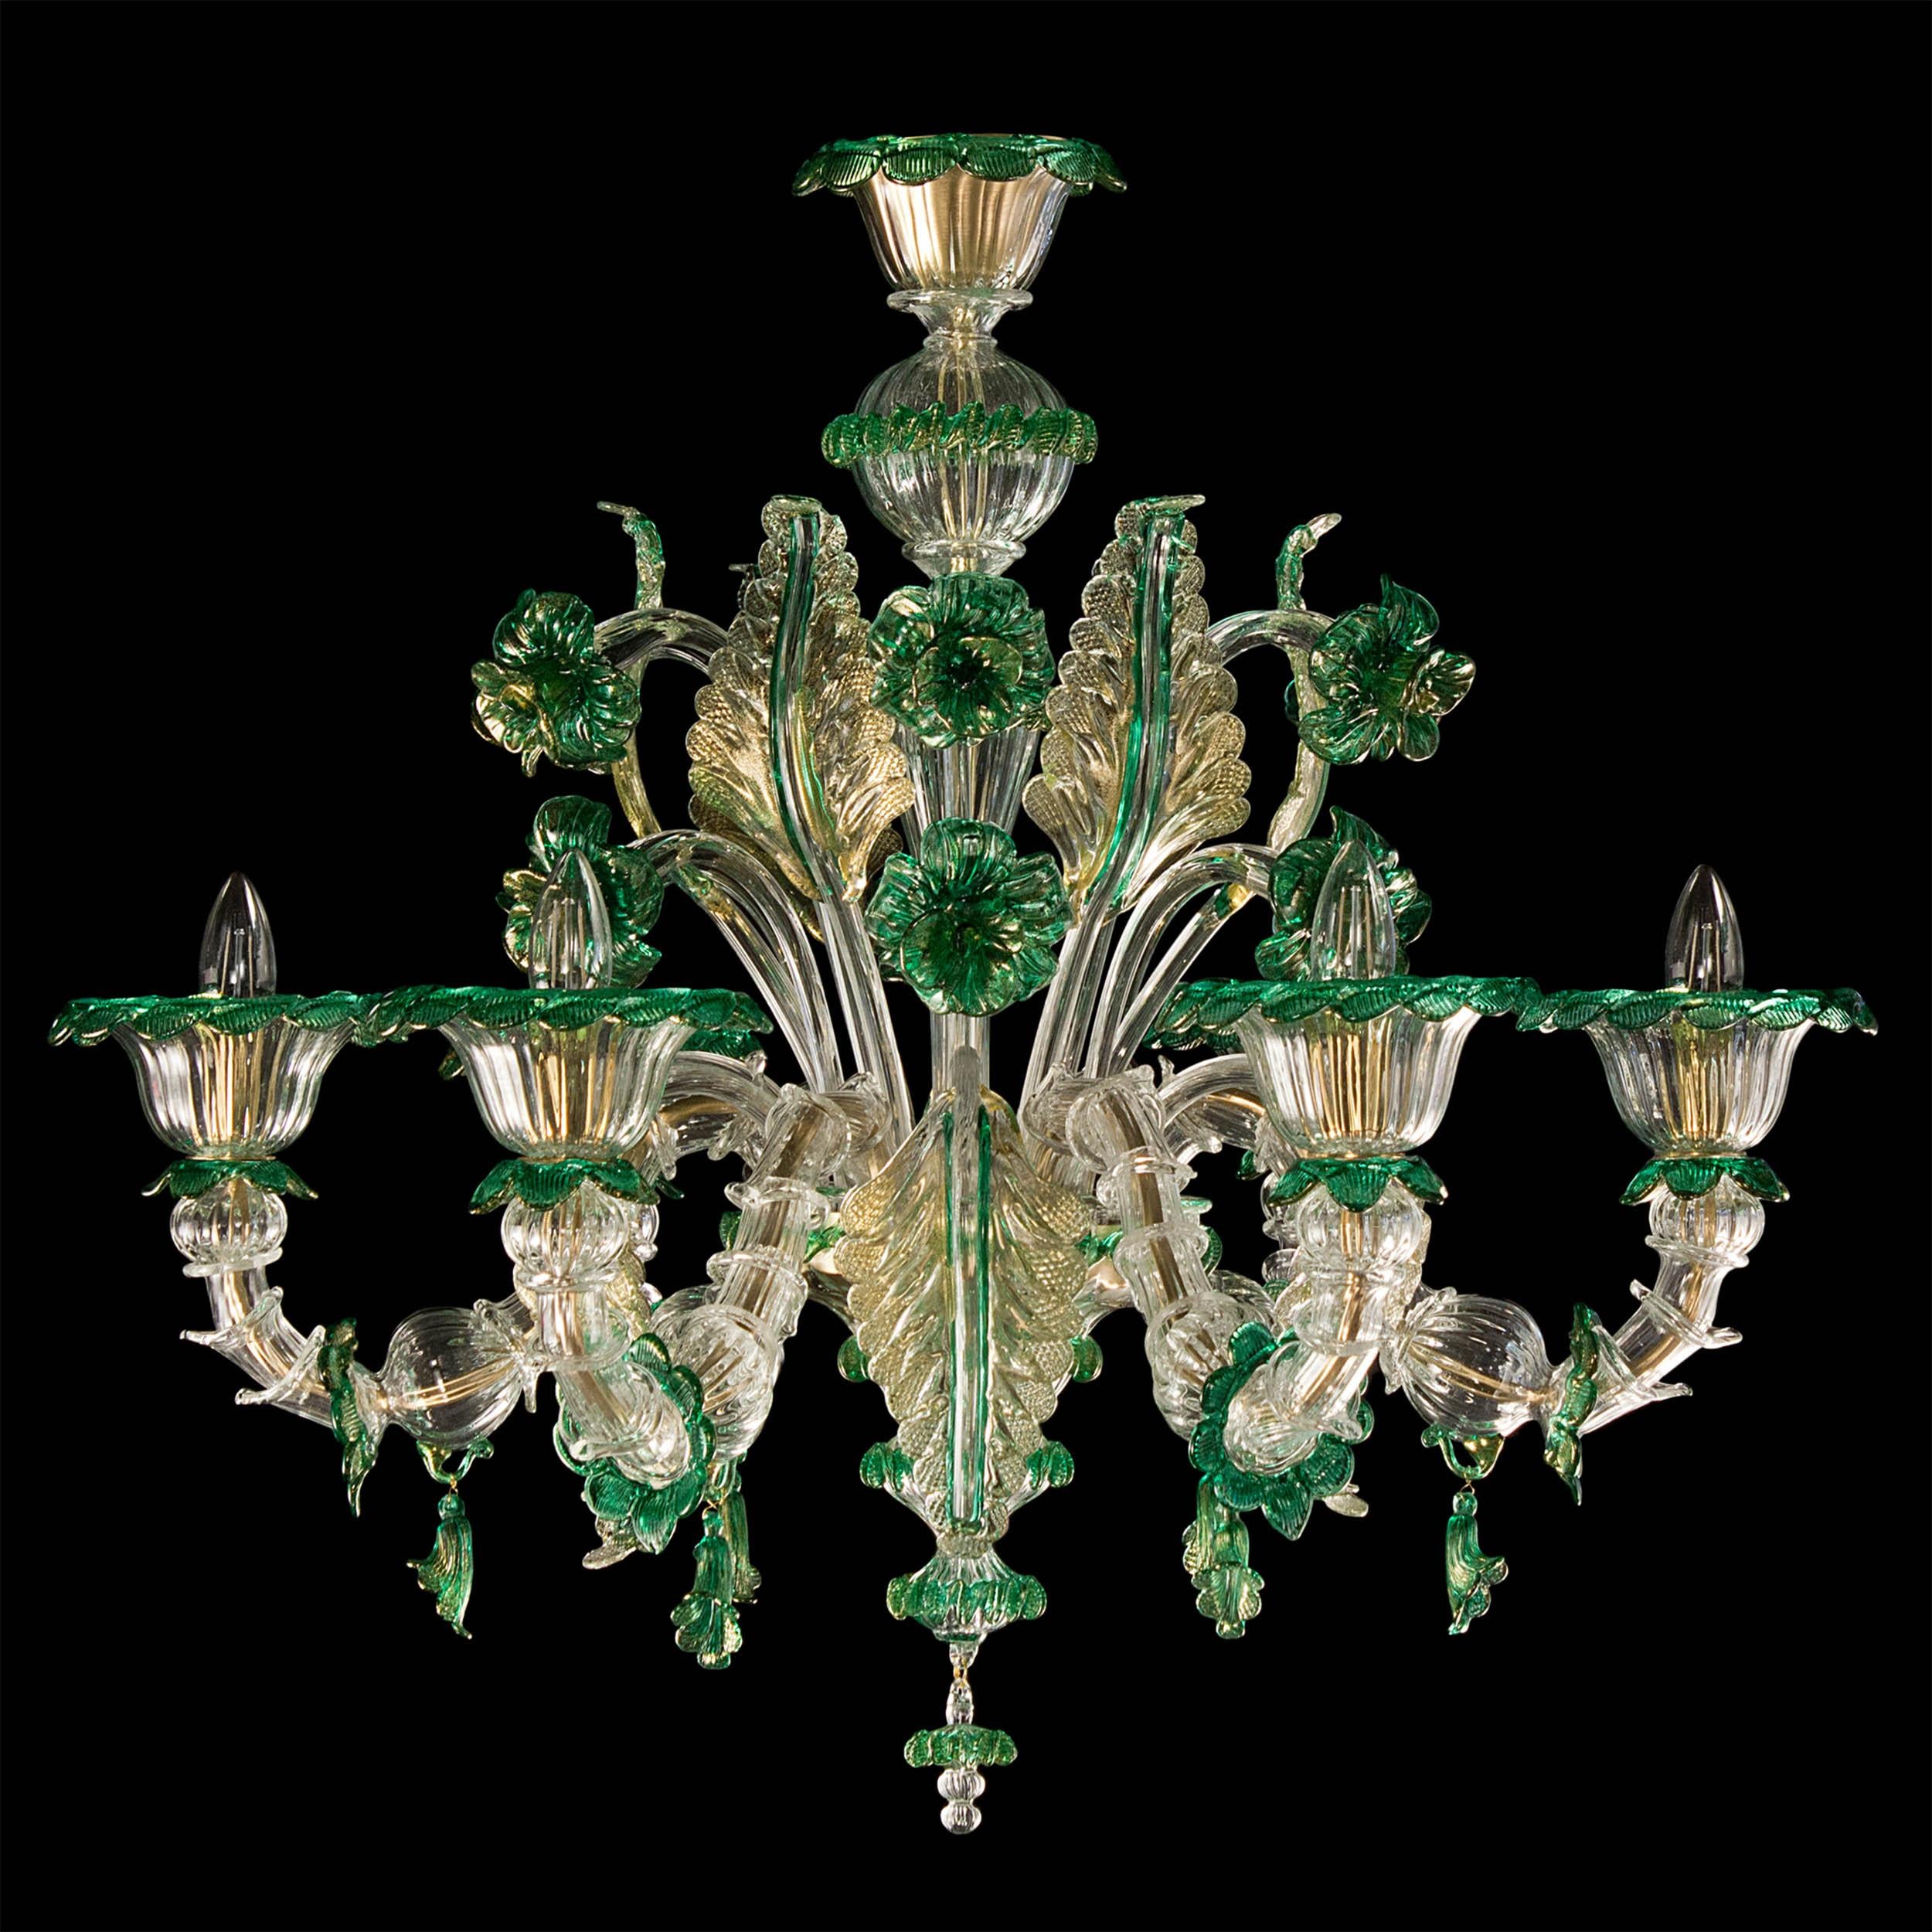 Lustre riche rezzonico 6 bras, verre de Murano transparent-or-vert, double niveau de fleurs par Multiforme
Ce lustre évoque la splendeur des siècles passés. C'est un modèle éternel, un produit classique fabriqué par nos maîtres verriers